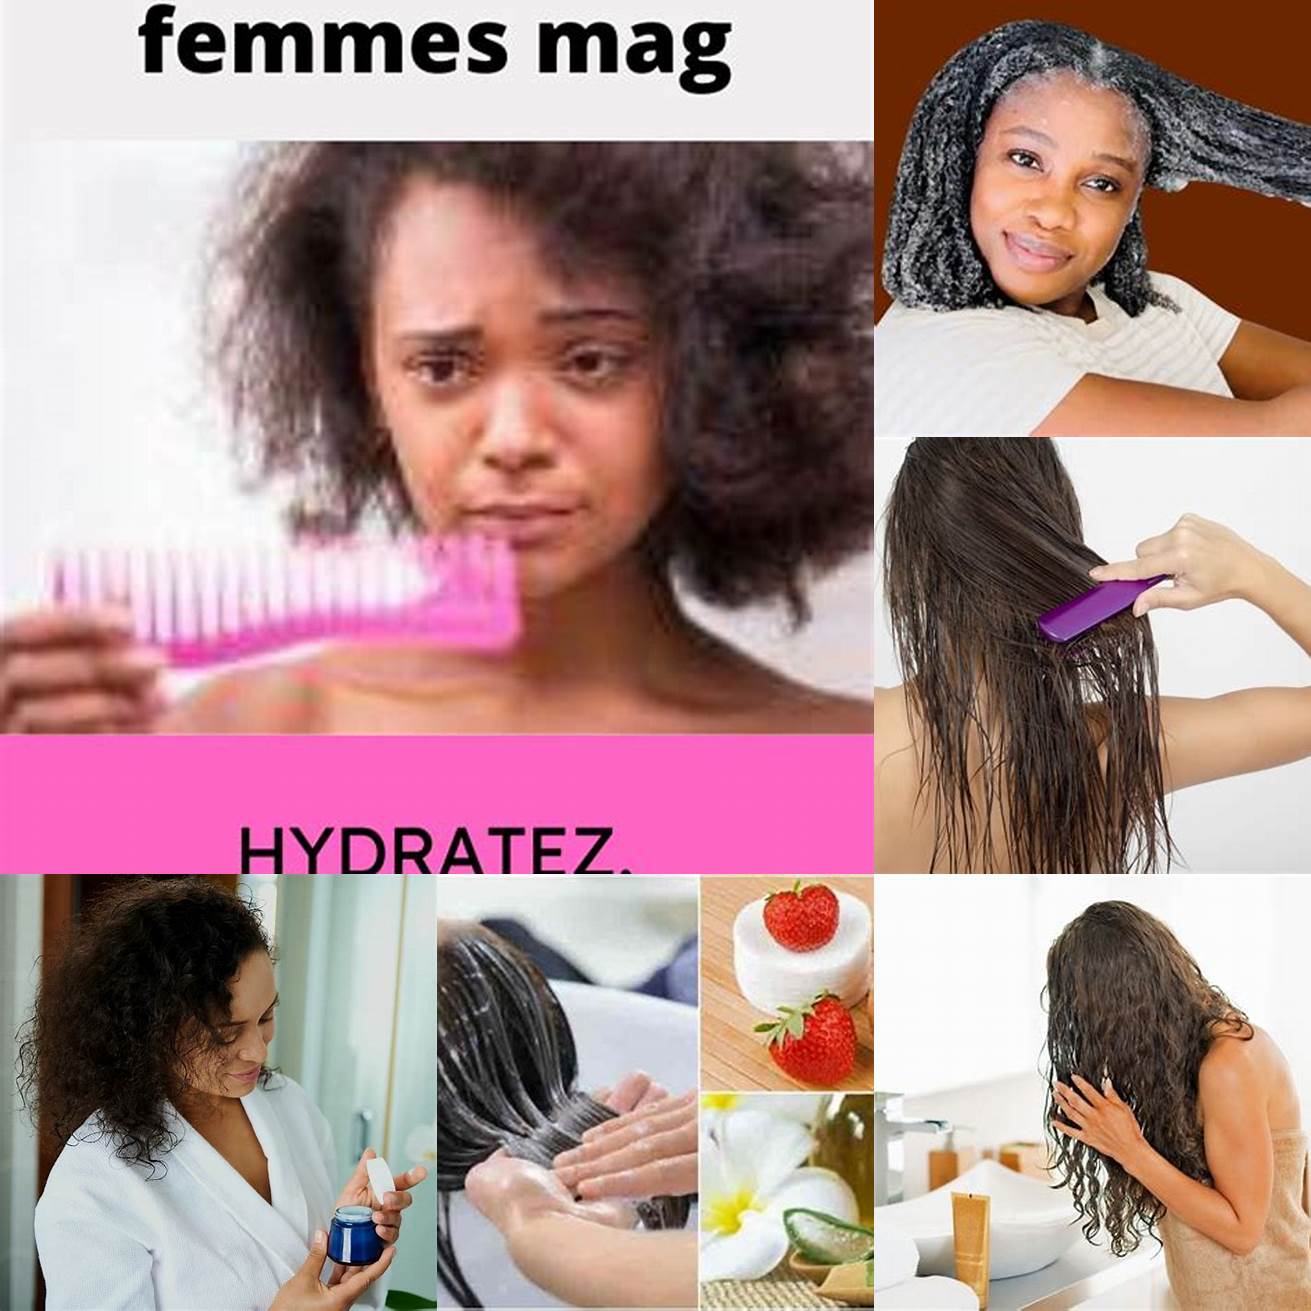 1 Hydratez vos cheveux régulièrement